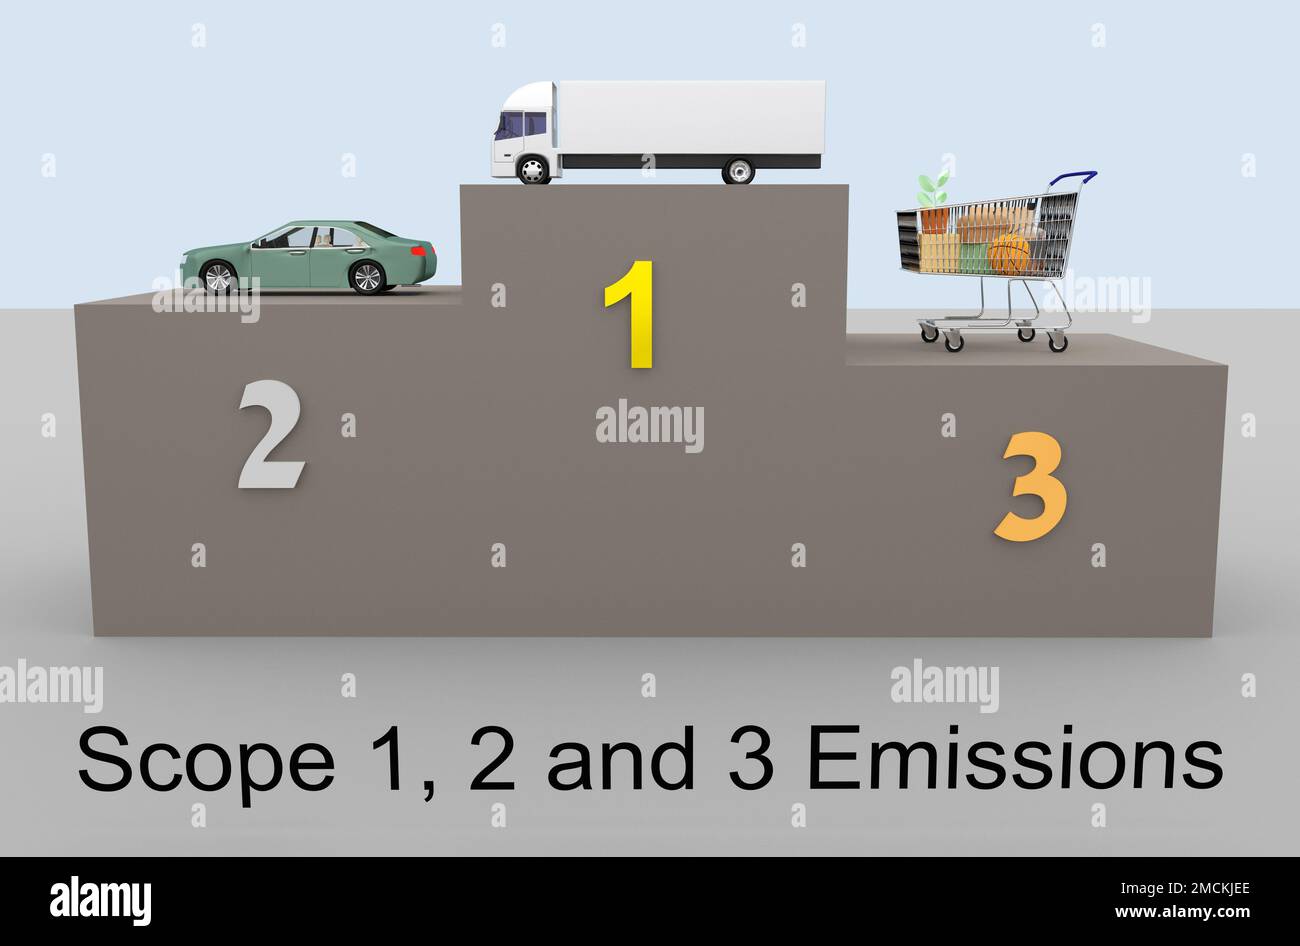 3D Darstellung verschiedener symbolischer Objekte auf einem Podium und Titel der Emissionen von Scope 1, 2 und 3. Oszilloskop 1 wird durch ein Fahrzeug voreingestellt, Oszilloskop 2 durch ein Stockfoto